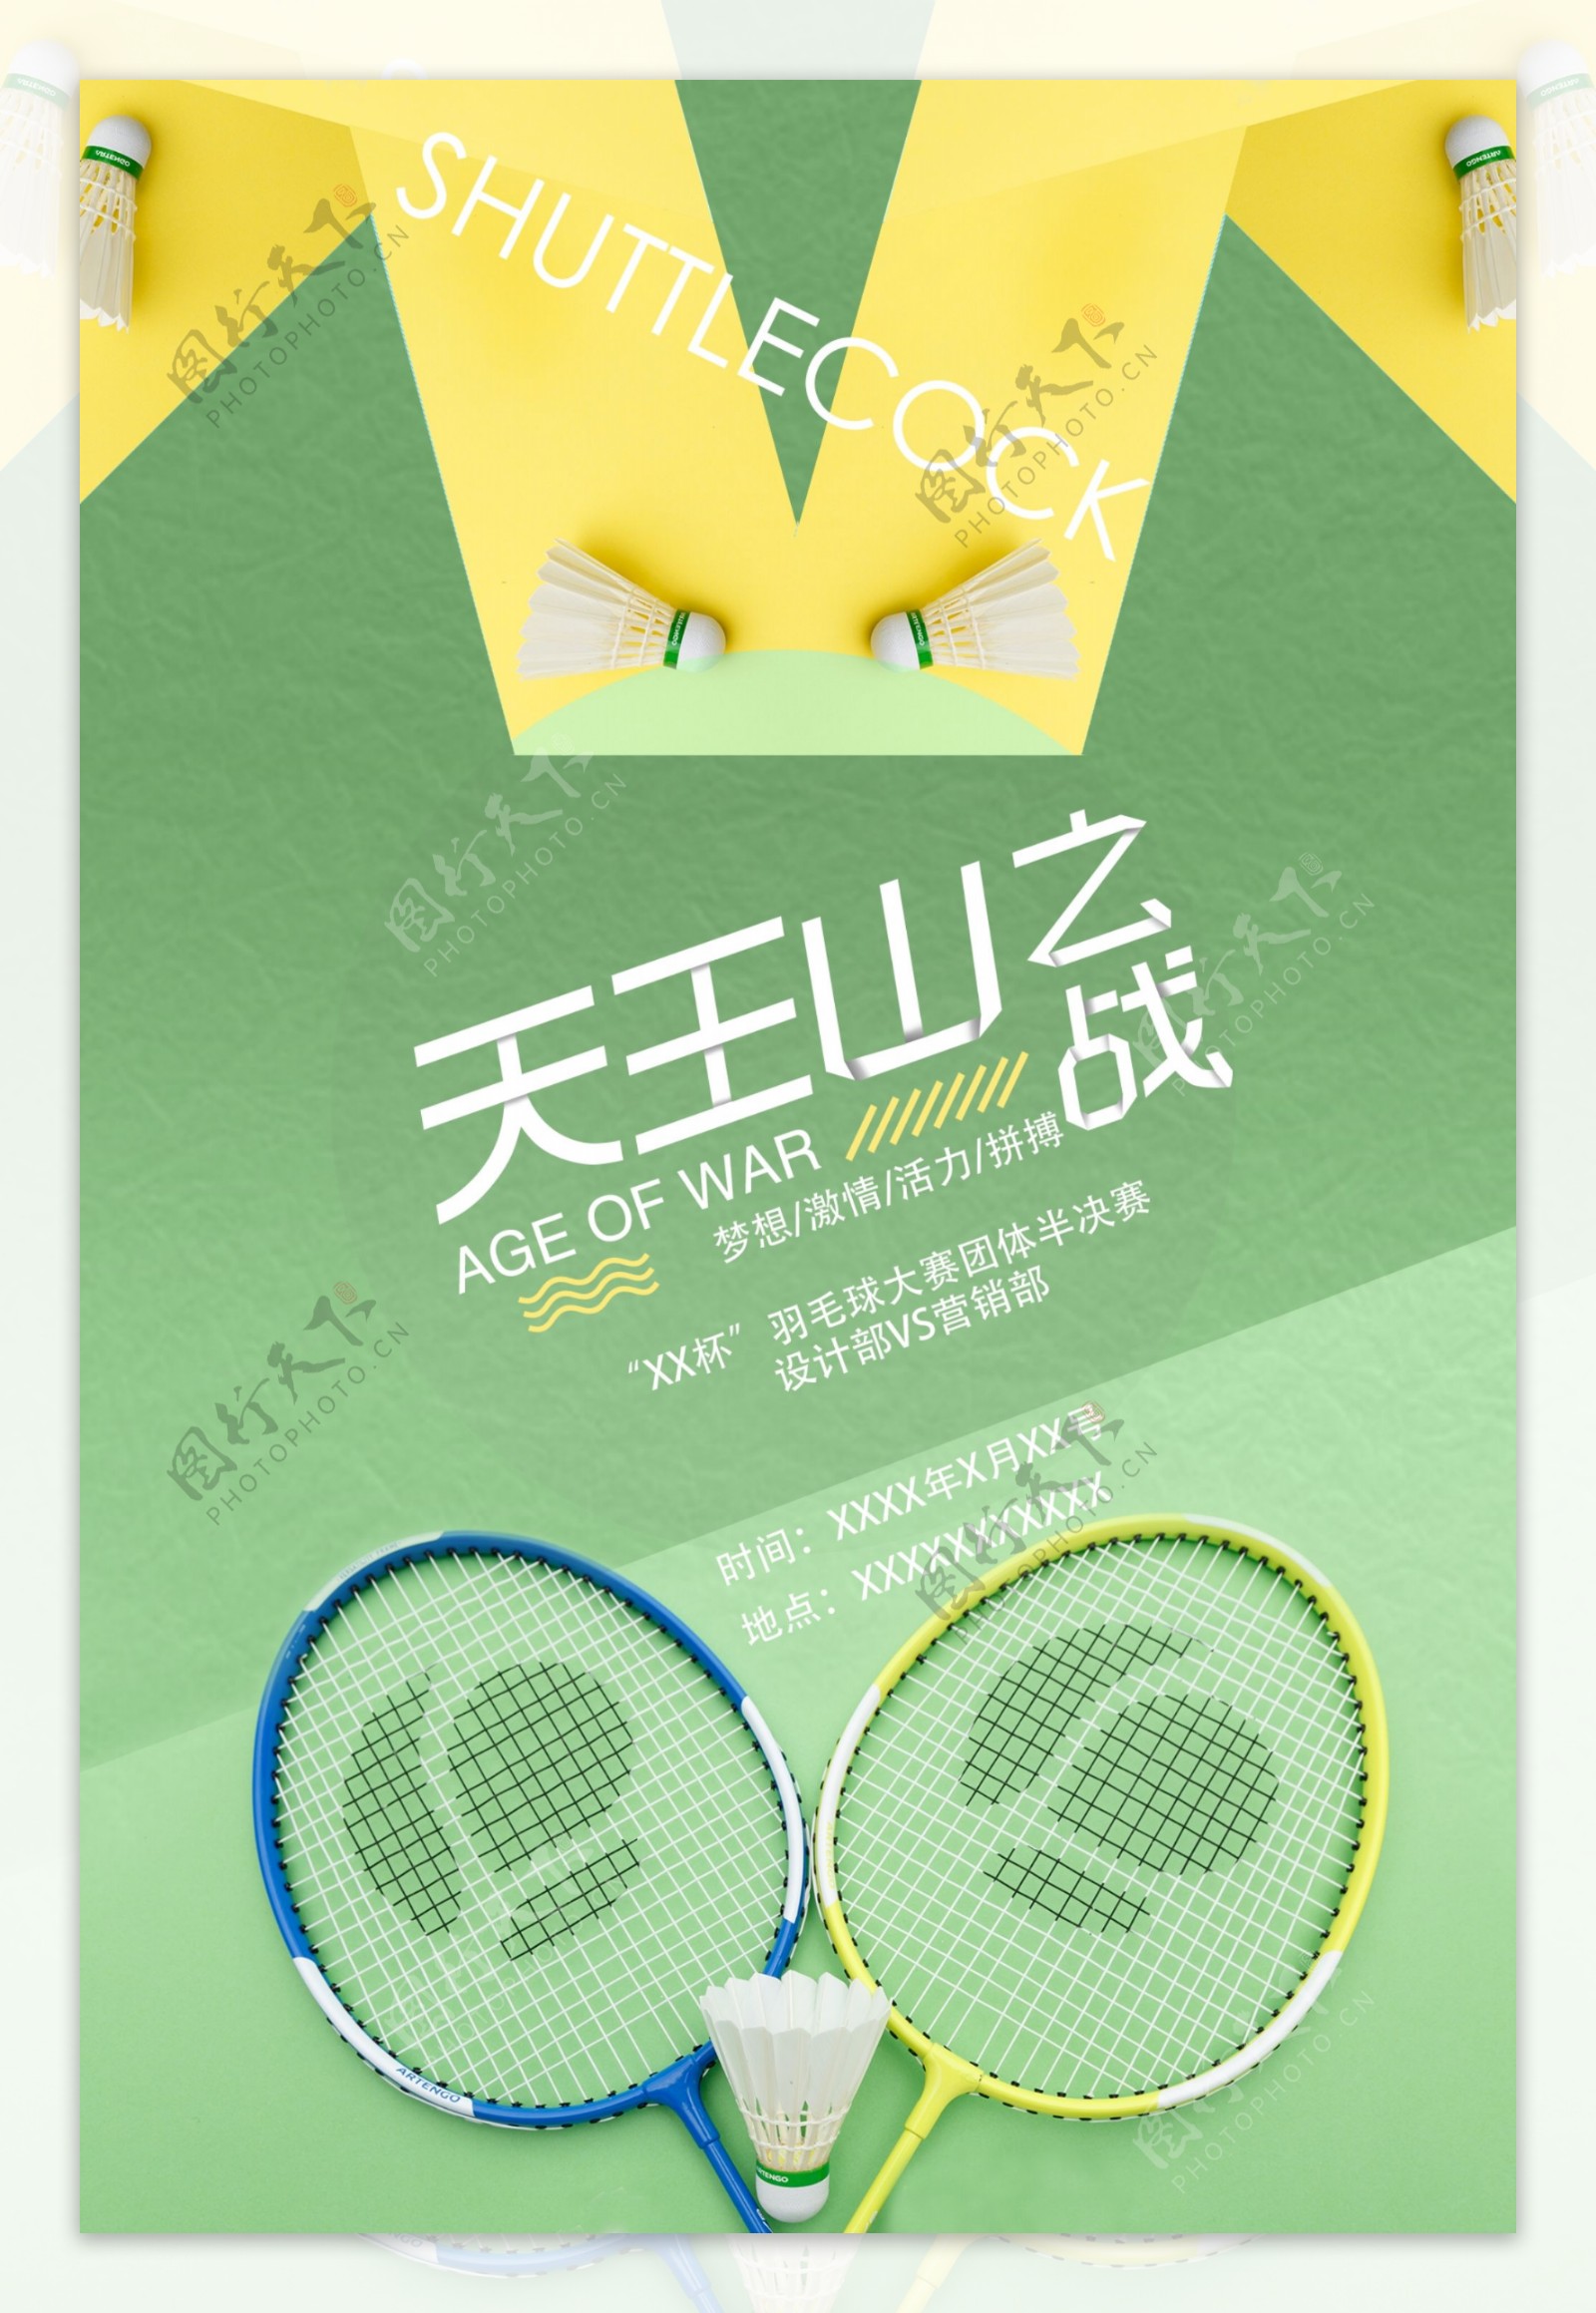 羽毛球比赛海报